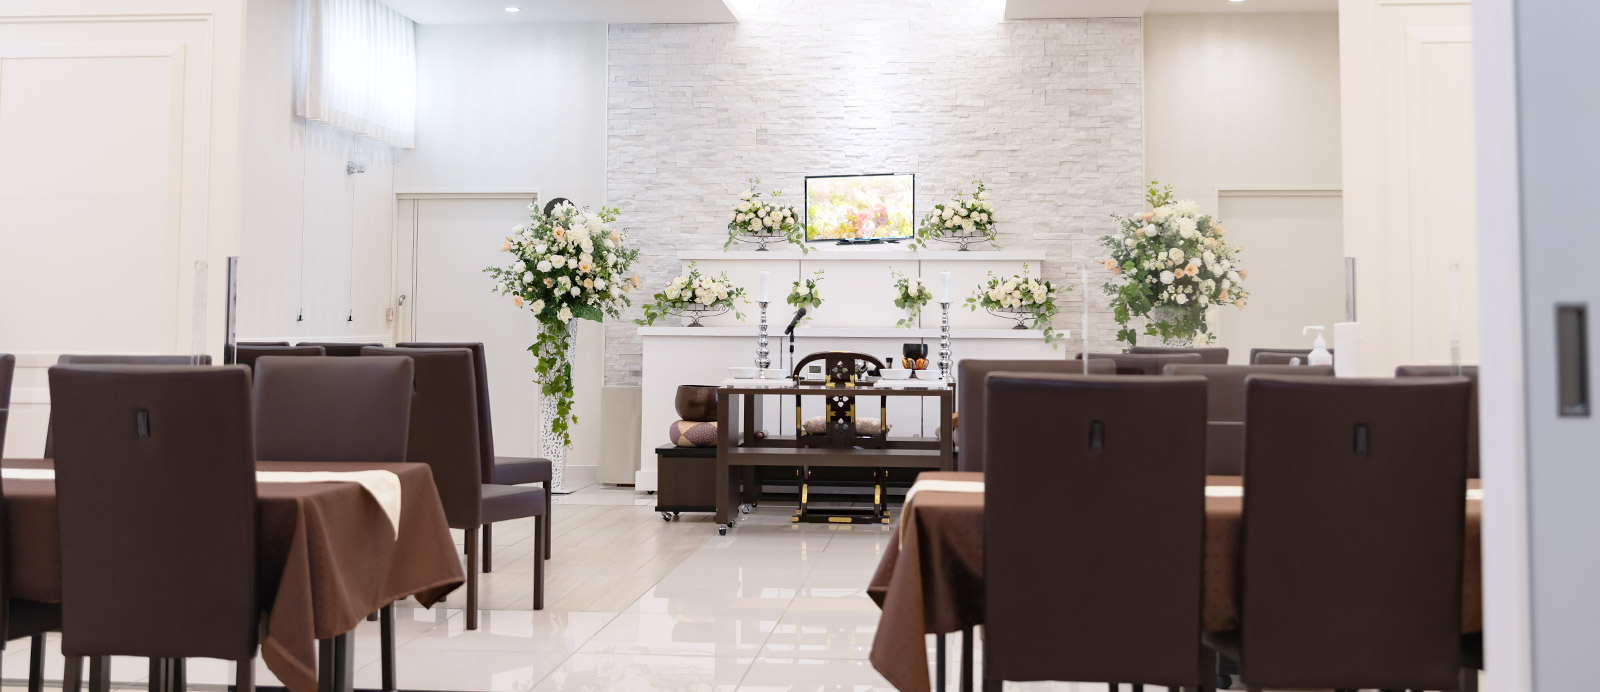 南光台ホールで葬儀・葬式が9.5万円からできる家族葬の仙和のホールの内装イメージ